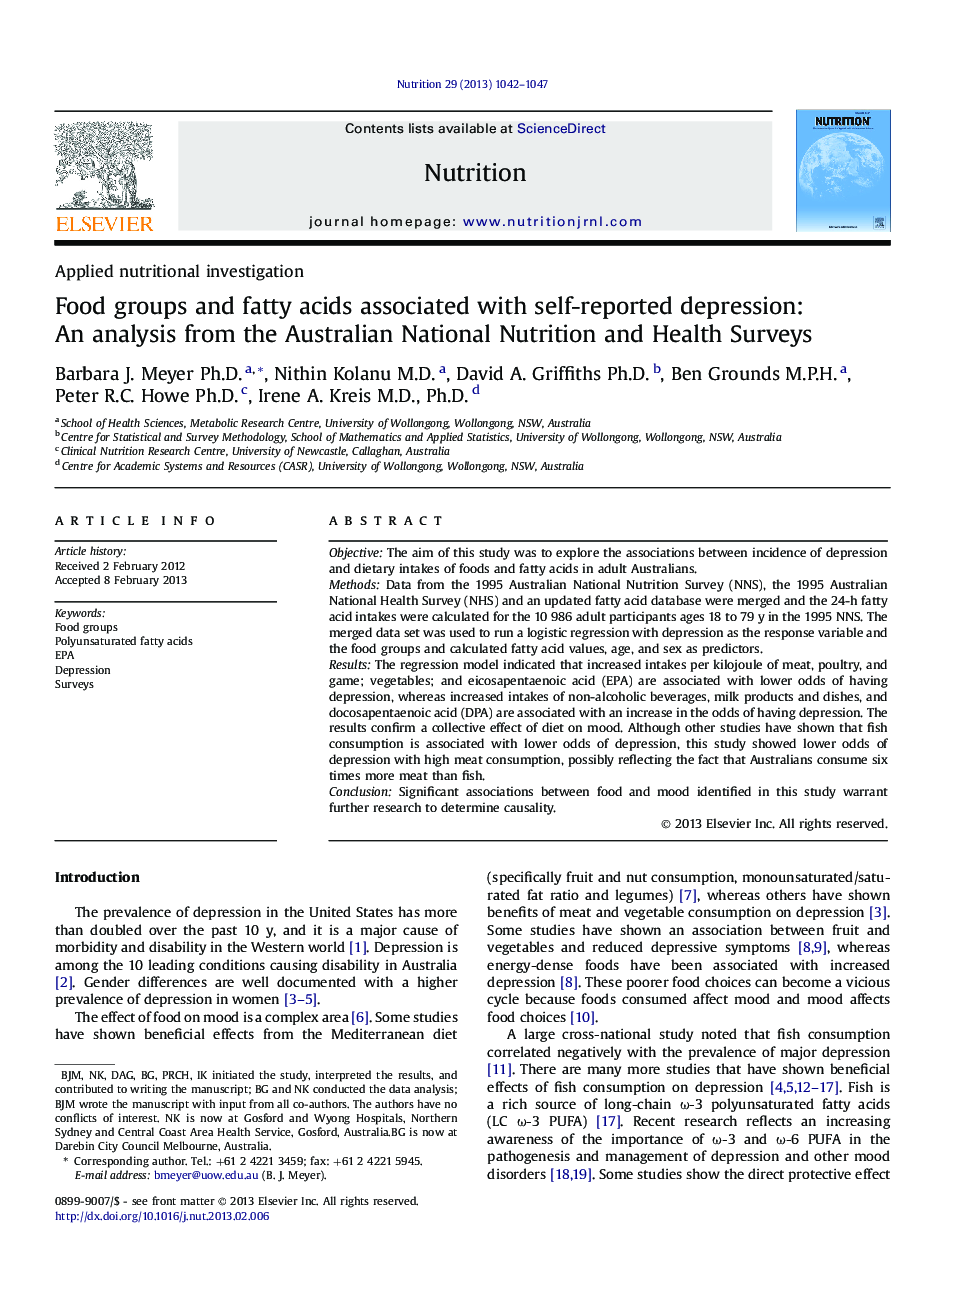 تحقیقات تغذیه ای کاربردی گروه های غذایی و اسیدهای چرب در ارتباط با افسردگی گزارش شده خود: تجزیه و تحلیل از نظرسنجی ملی تغذیه و بهداشت استرالیا 